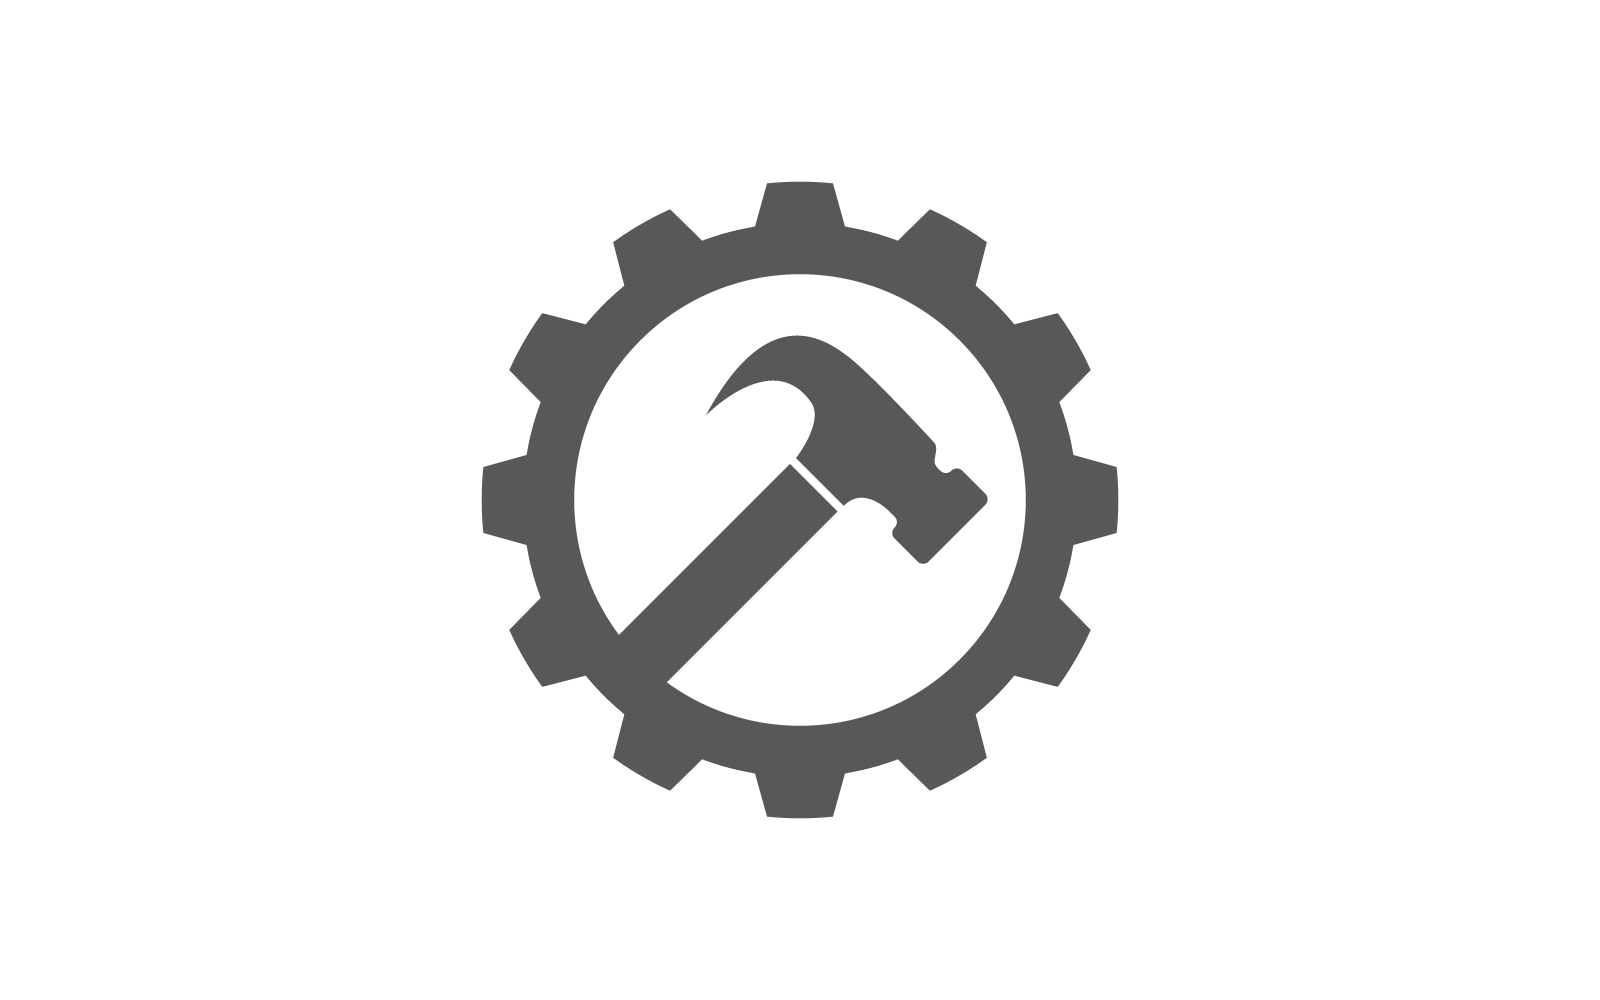 Hammer and gear logo vector flat design Logo Template